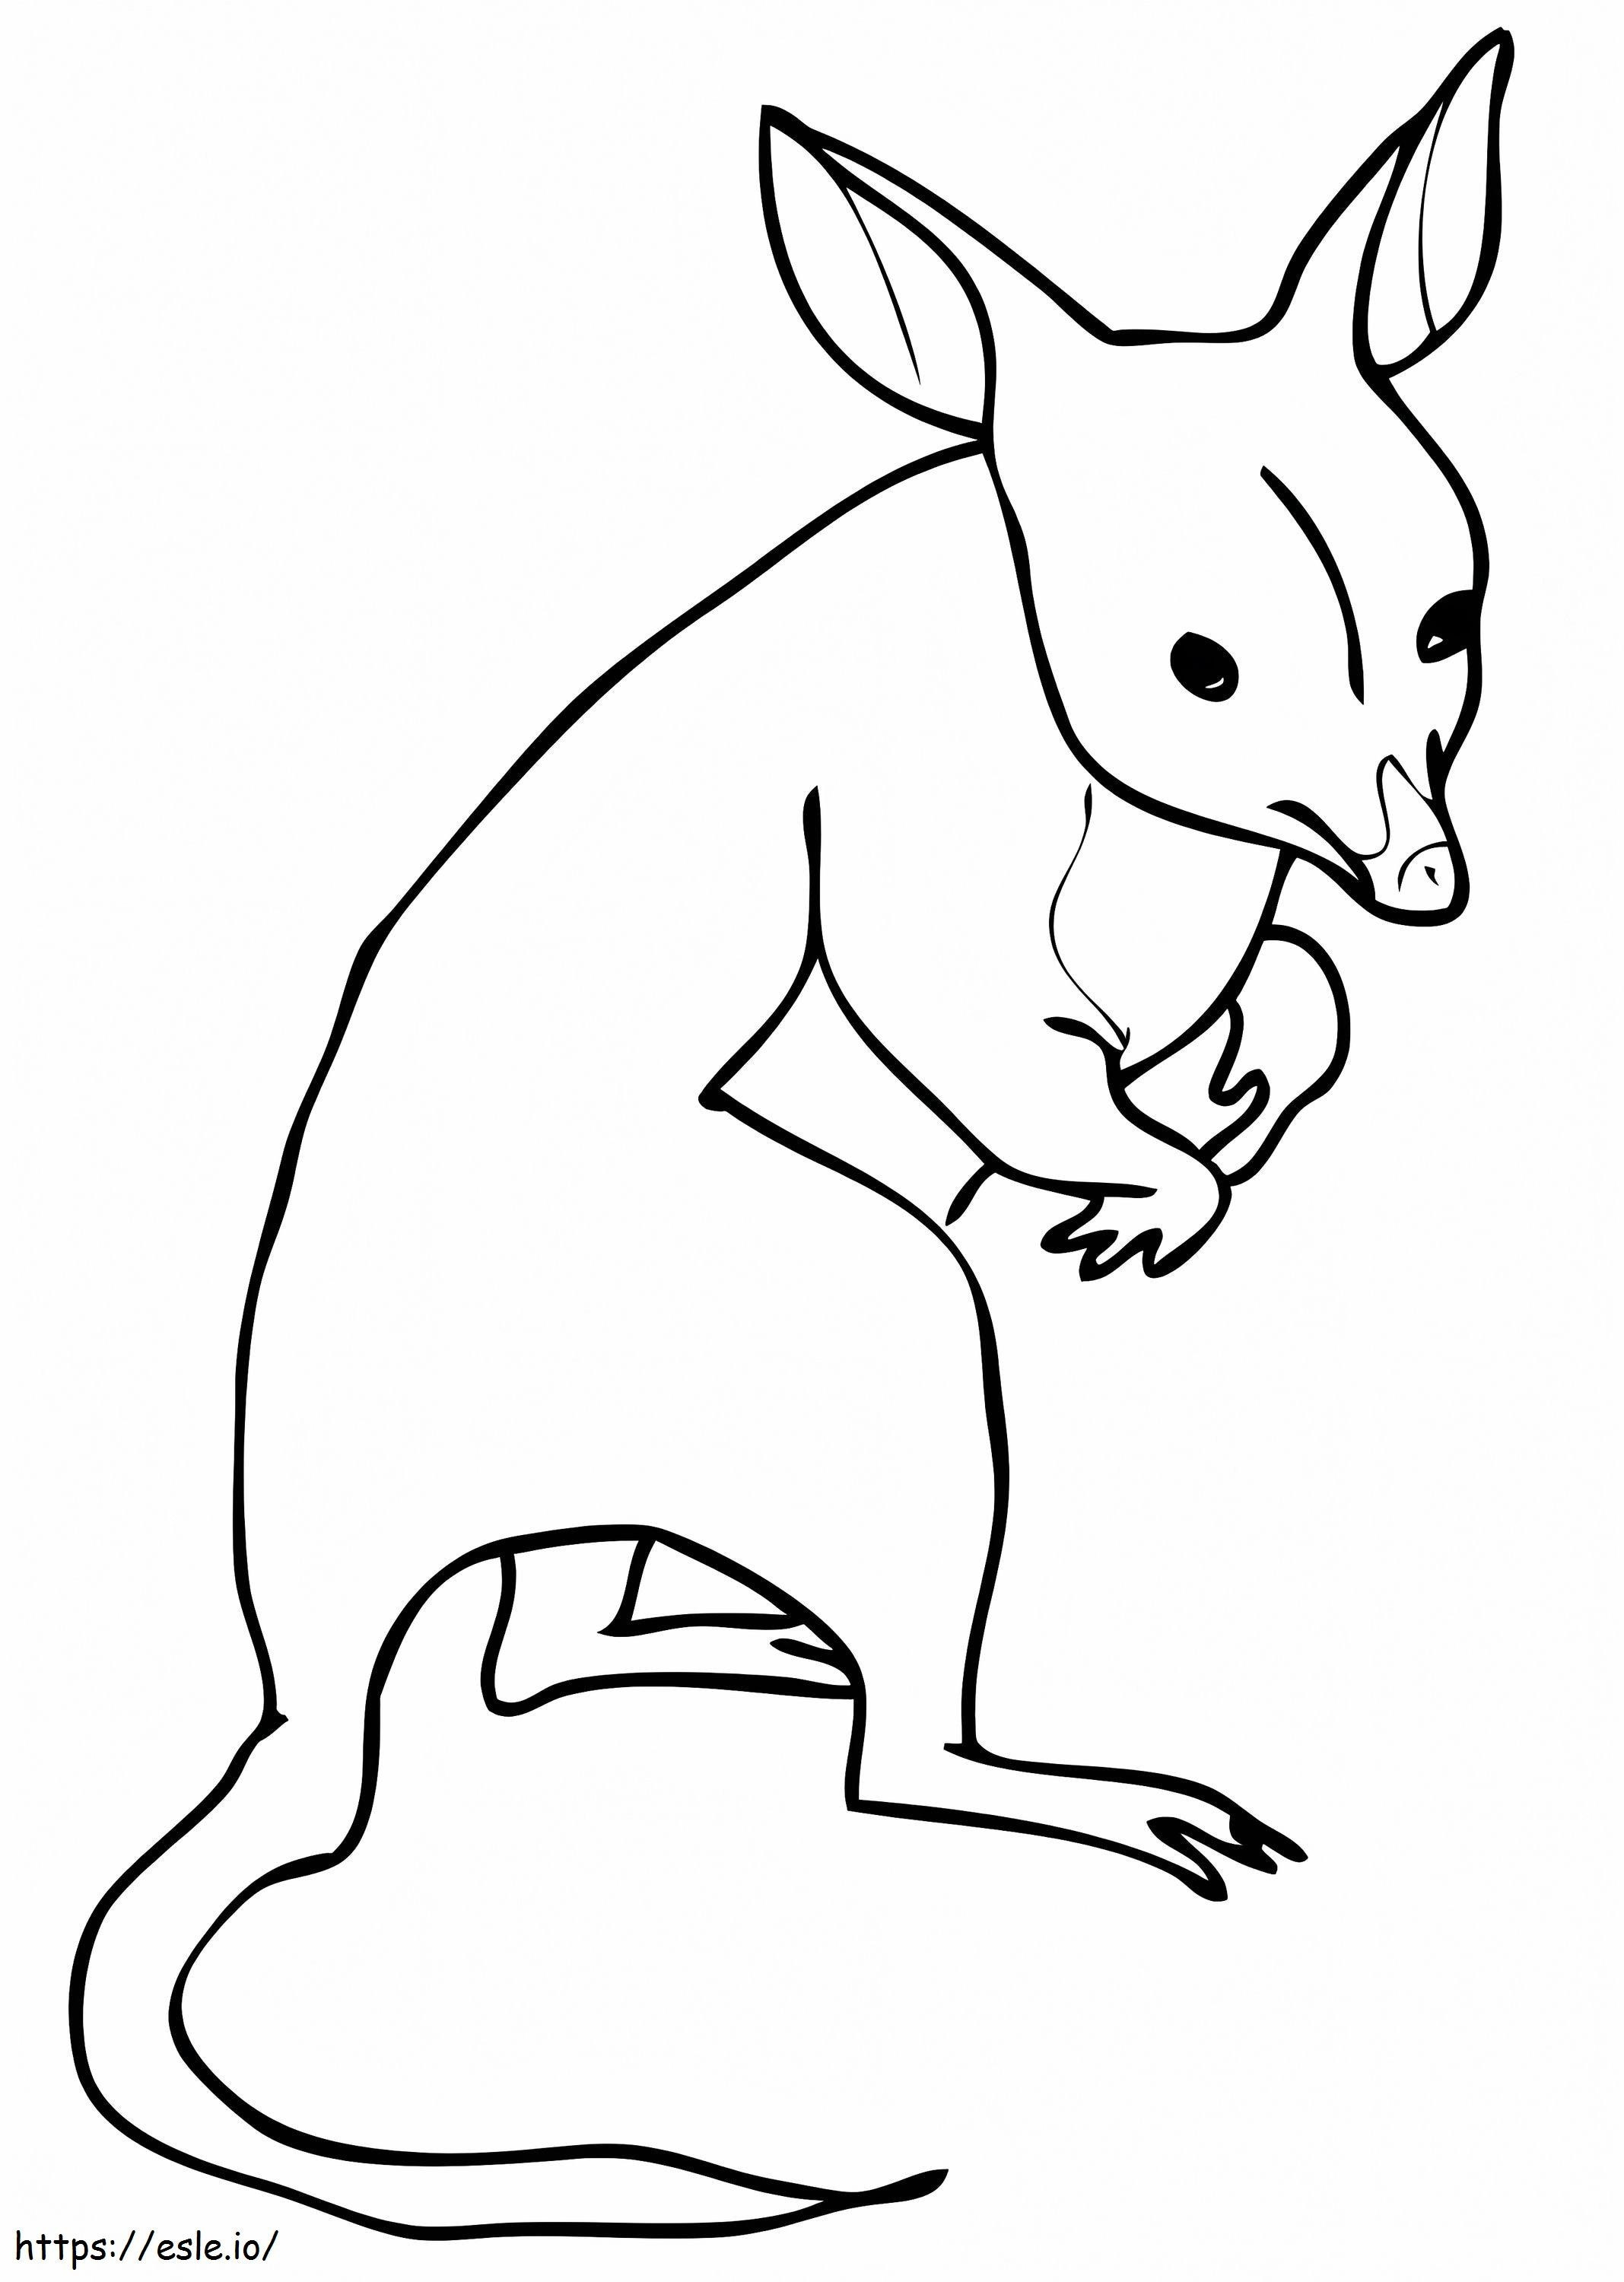 Austrália Bandicoot para colorir